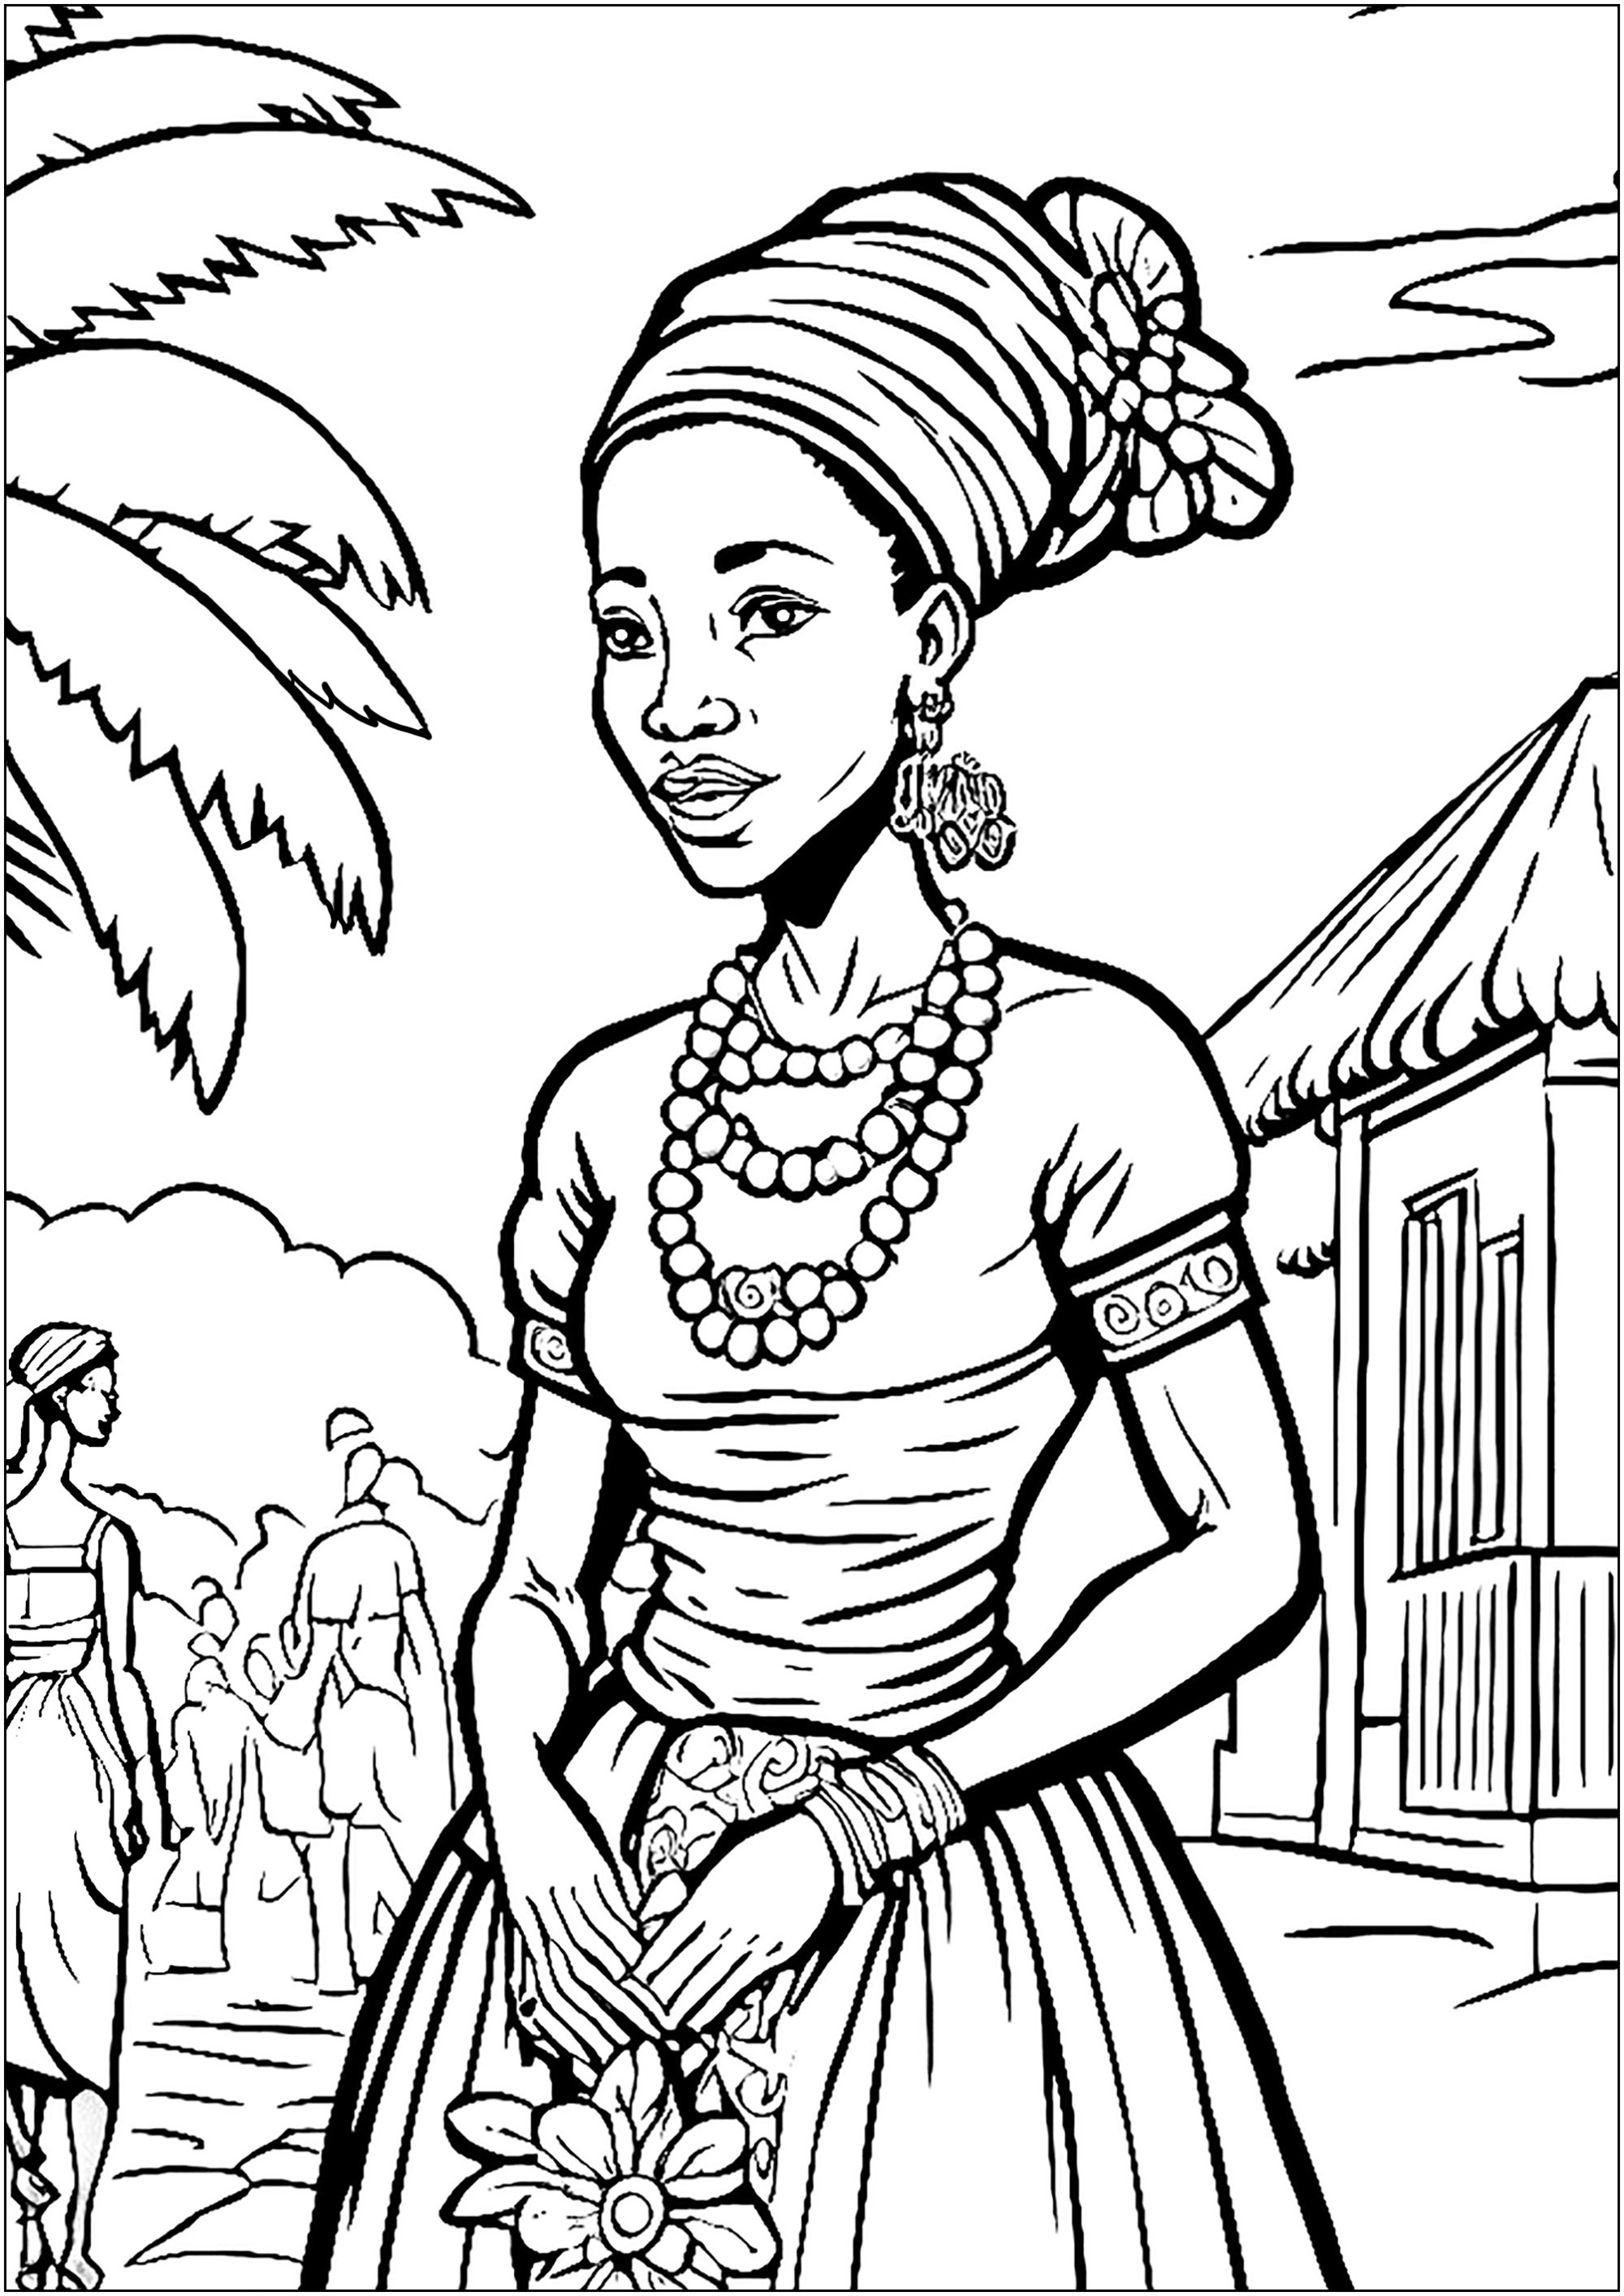 Femme africaine en vêtements typiques, dans un beau village